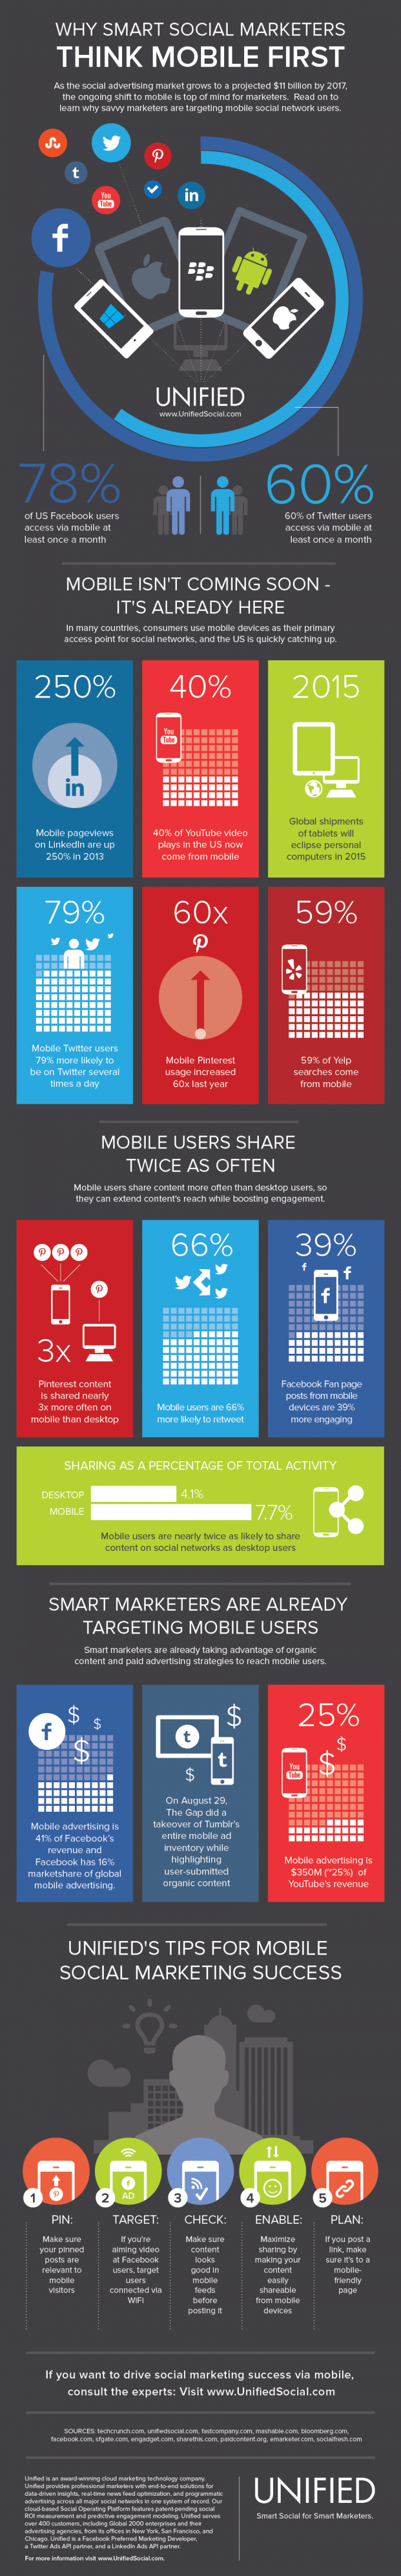 mobile_social_marketing